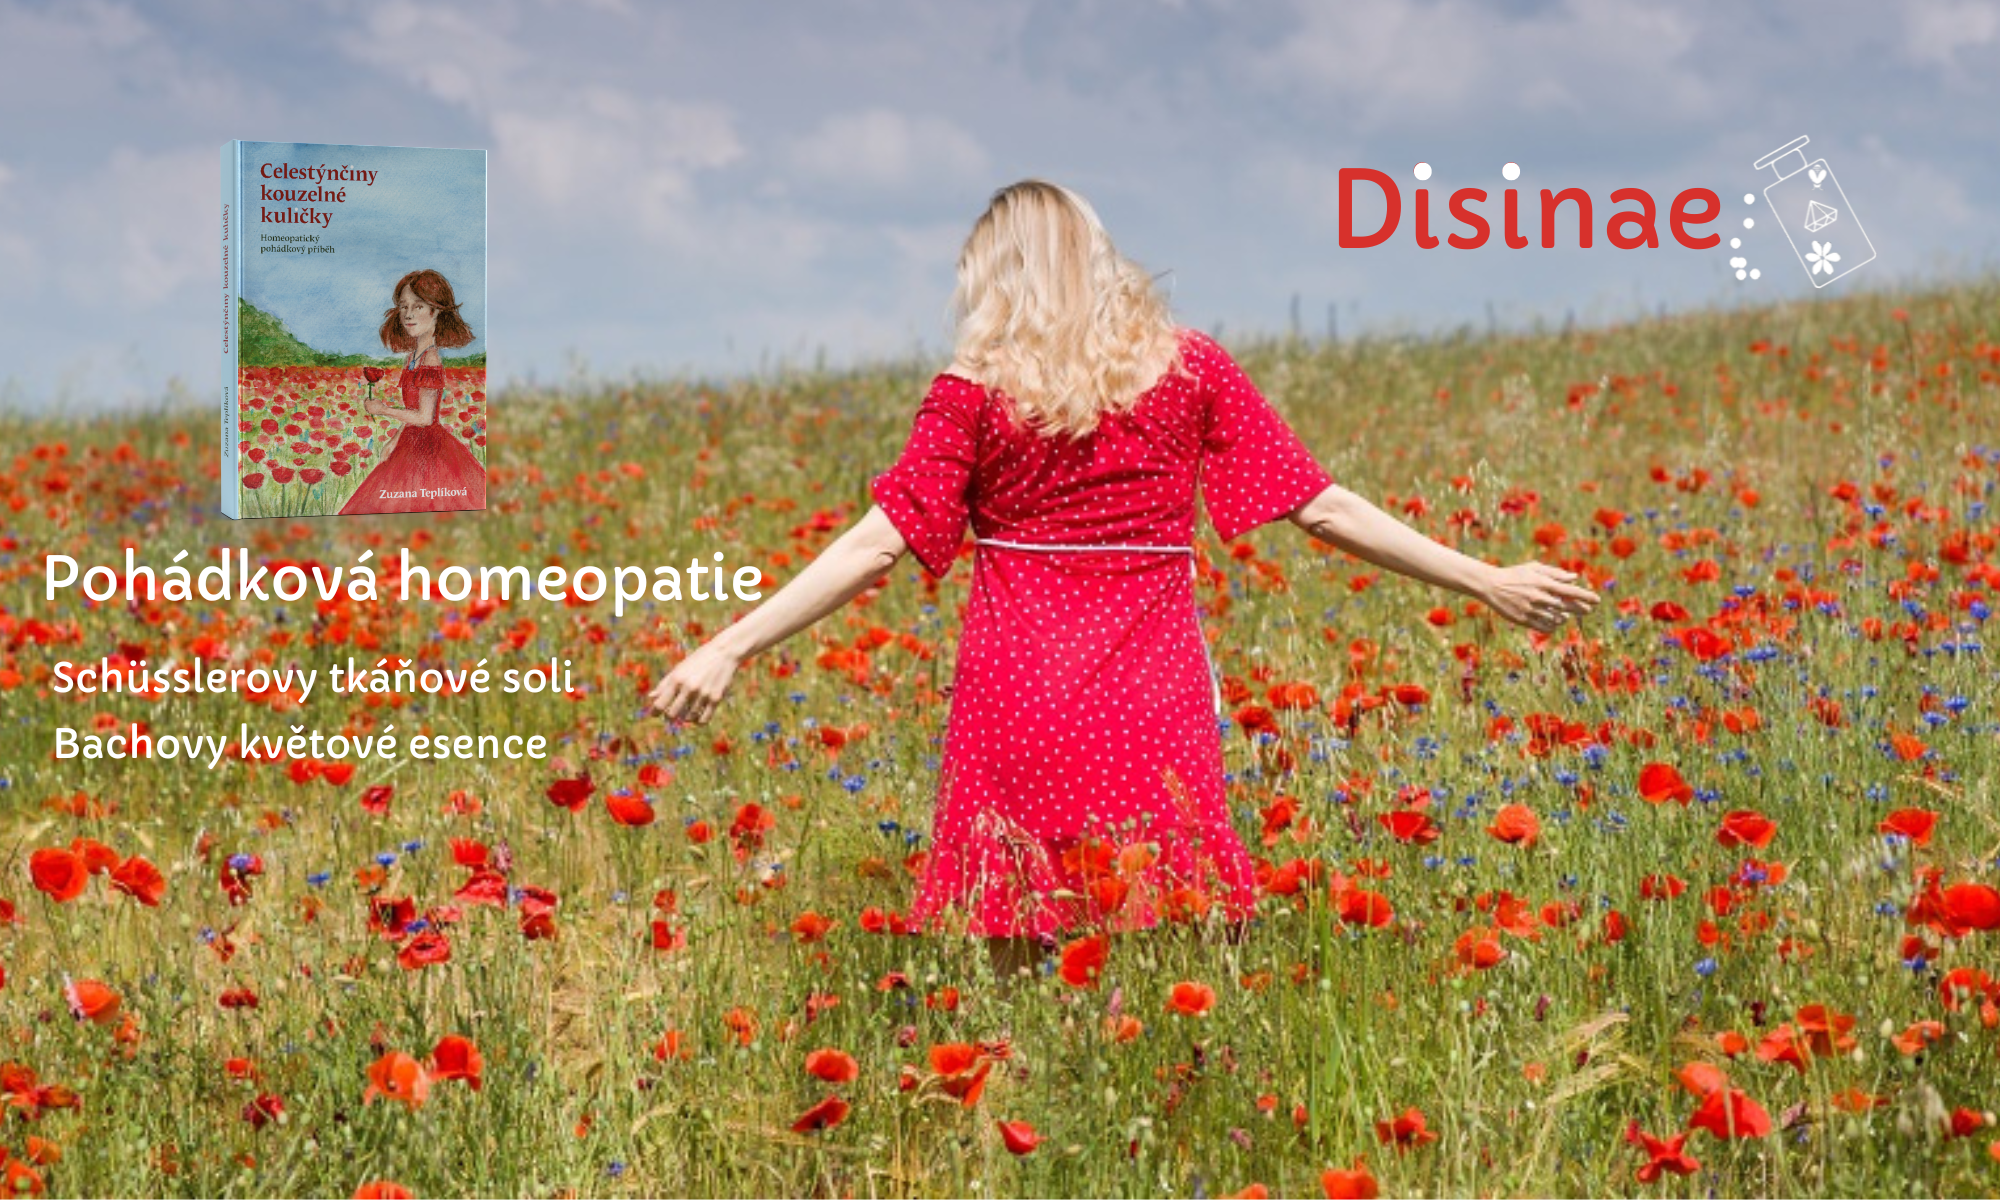 Homeopatie Hodonín, Disinae, Celestýnčiny kouzelné kuličky